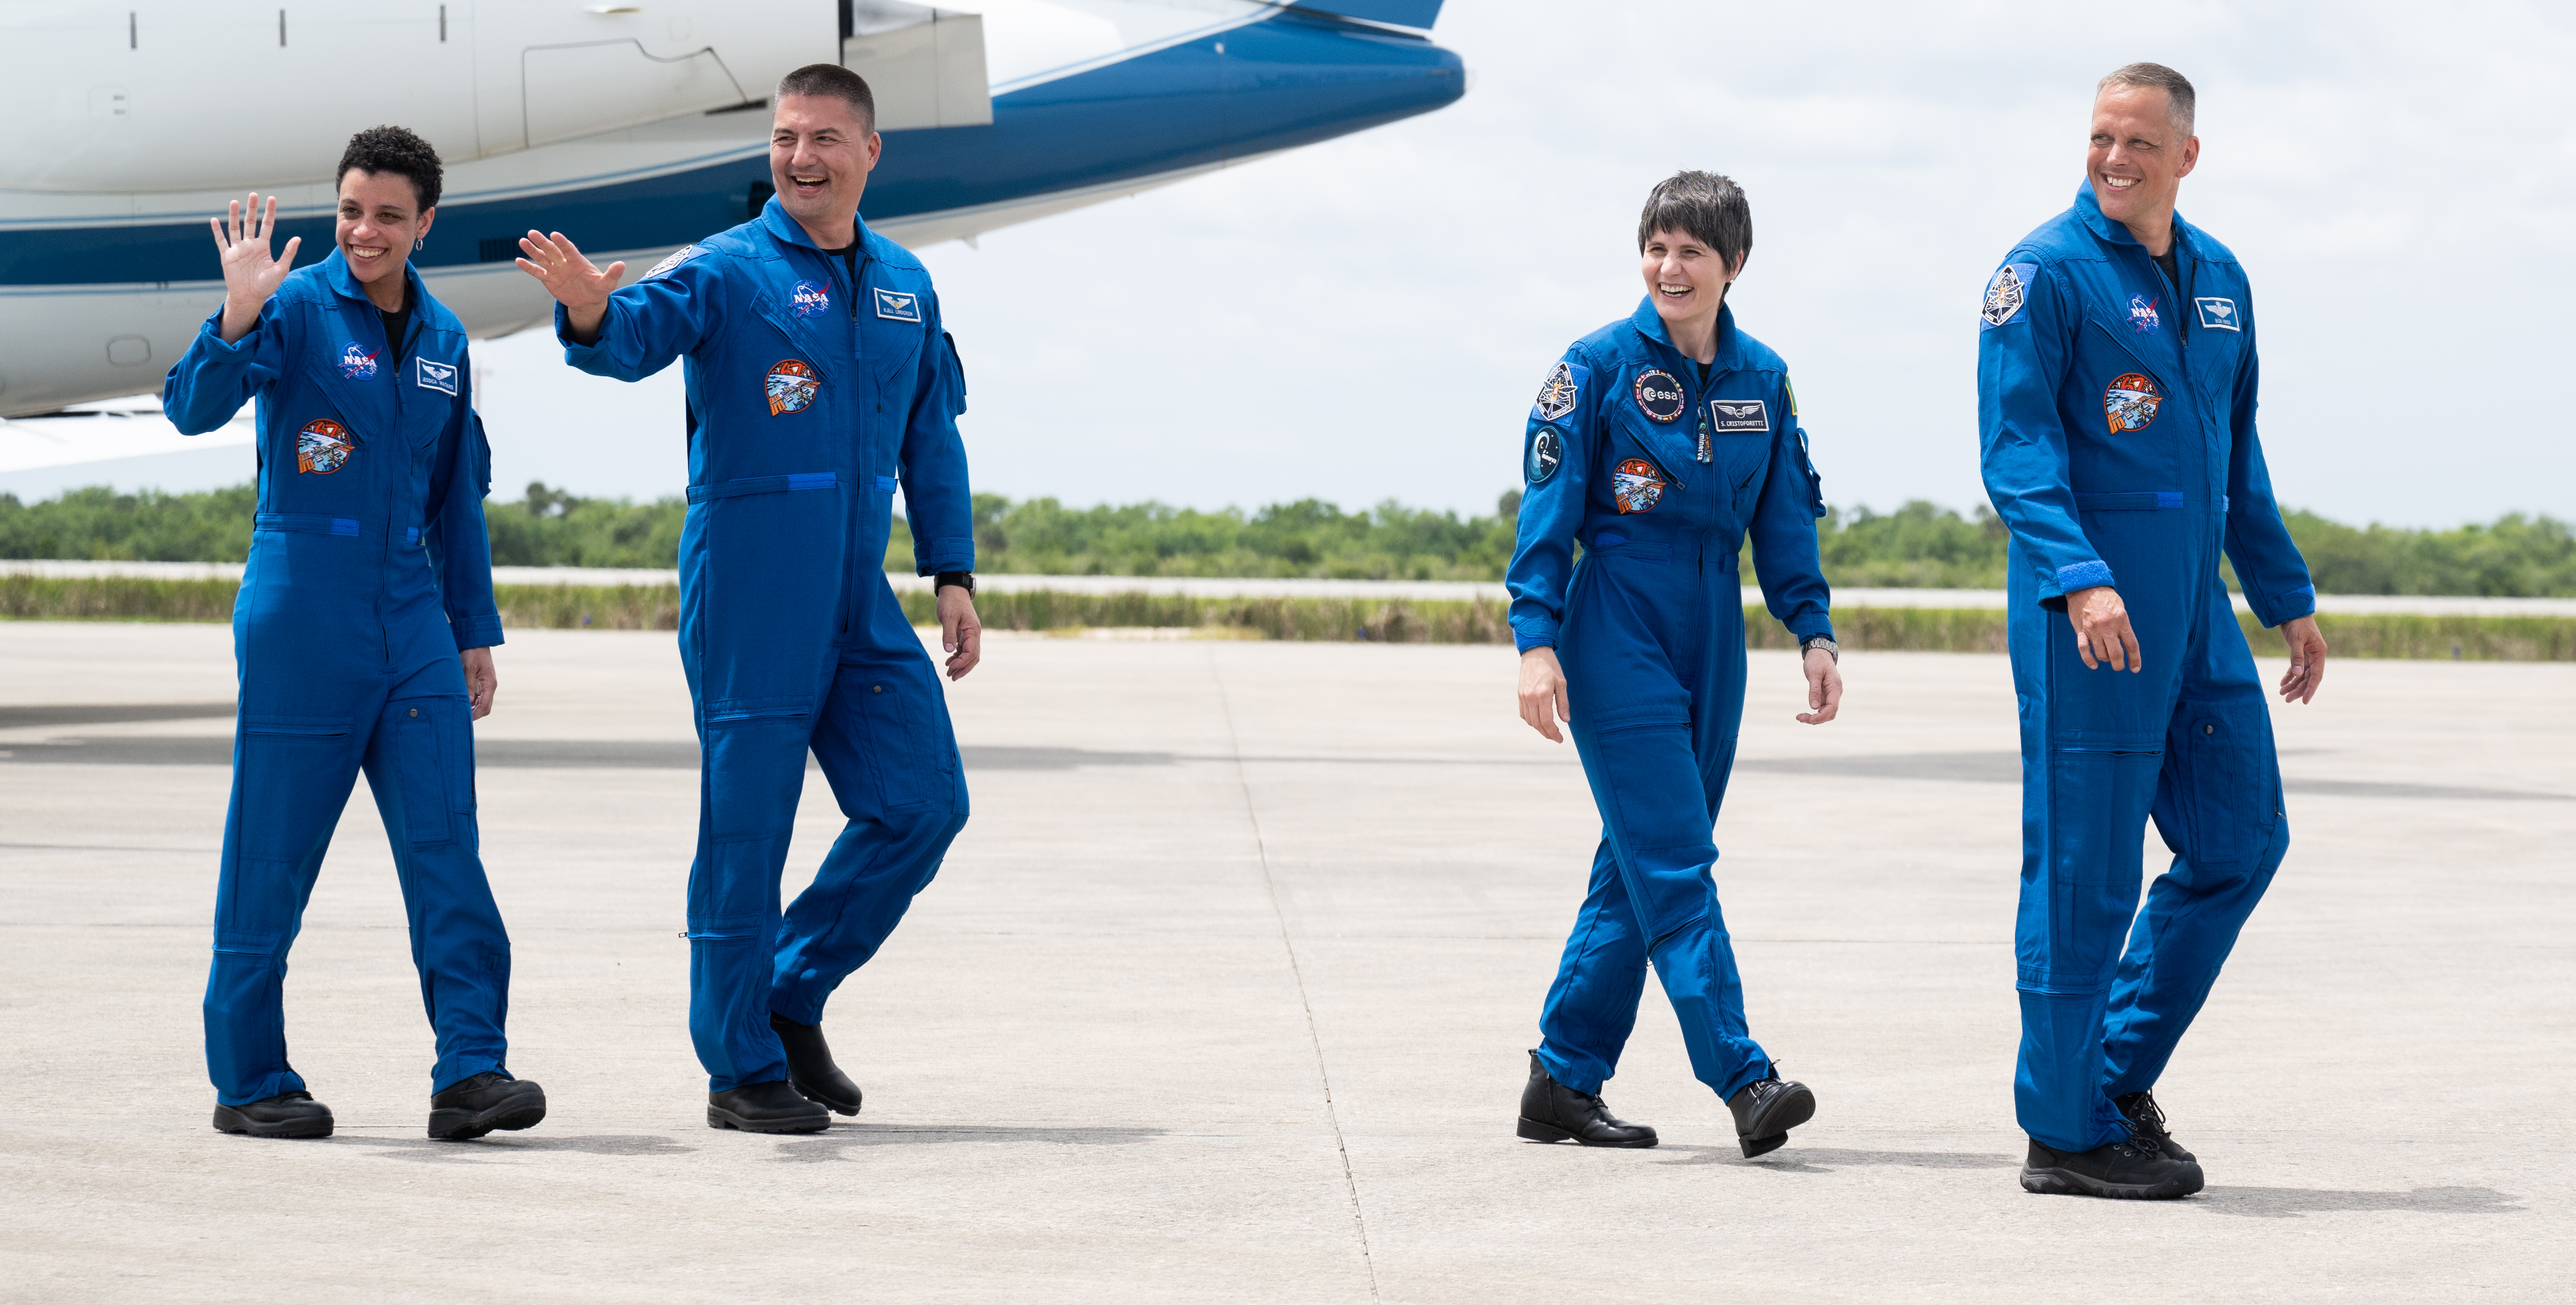 Załoga misji Crew-4 po dotarciu do KSC, od lewej: Jessica Watkins, Kjell Lindgren, Samantha Cristoforetti, Robert Hines (Źródło: NASA/Joel Kowsky)